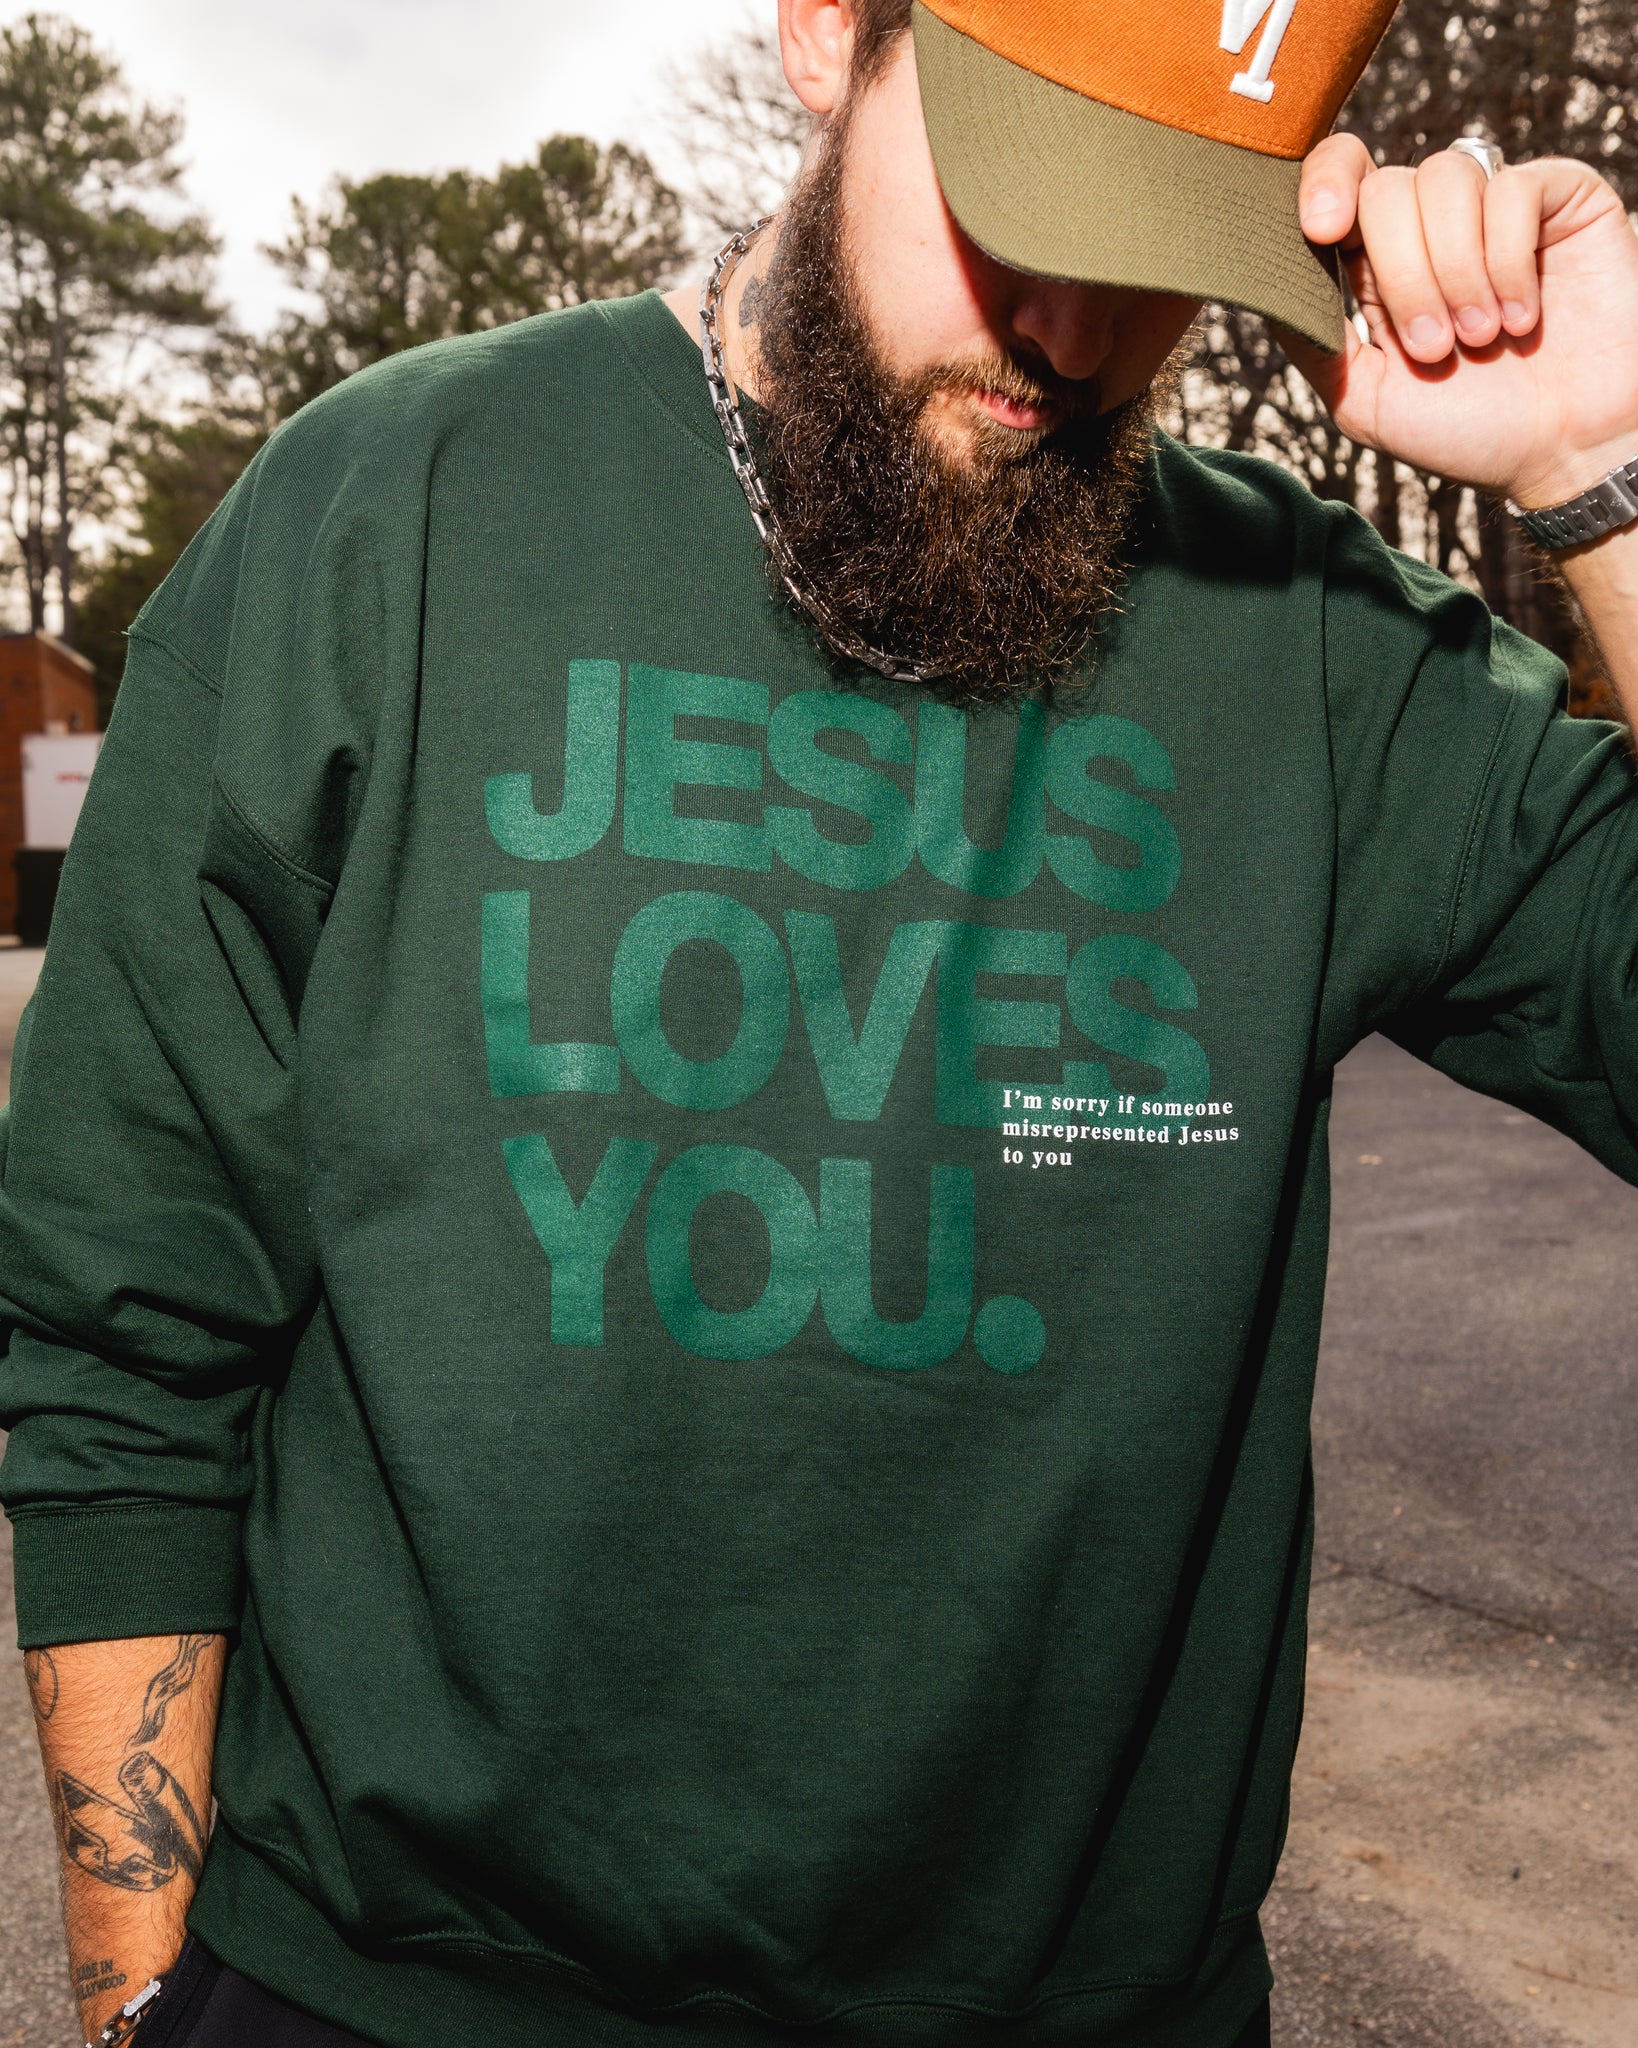 GOOD NEWS JESUS LOVES YOU Hoodie Christian Sweatshirt Jesus Hoodie Trendy  Hoodie Bible Verse Shirt Unisex Aesthetic Clothes - AliExpress